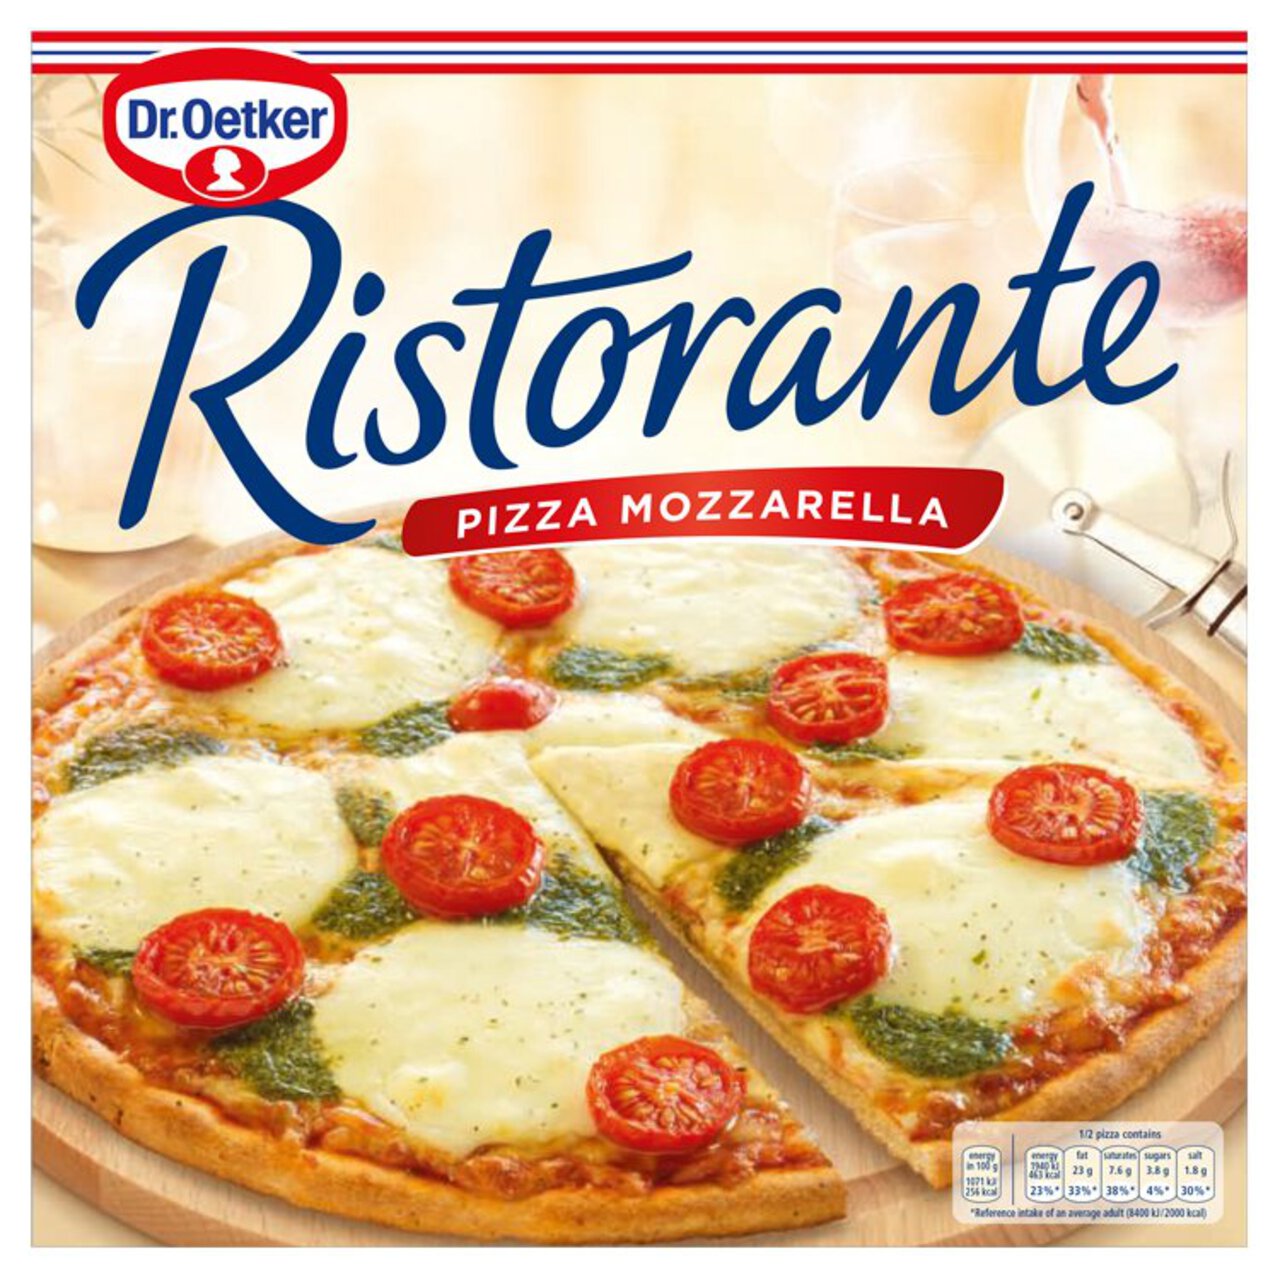 Dr. Oetker Ristorante Mozzarella Cheese Pizza 335g